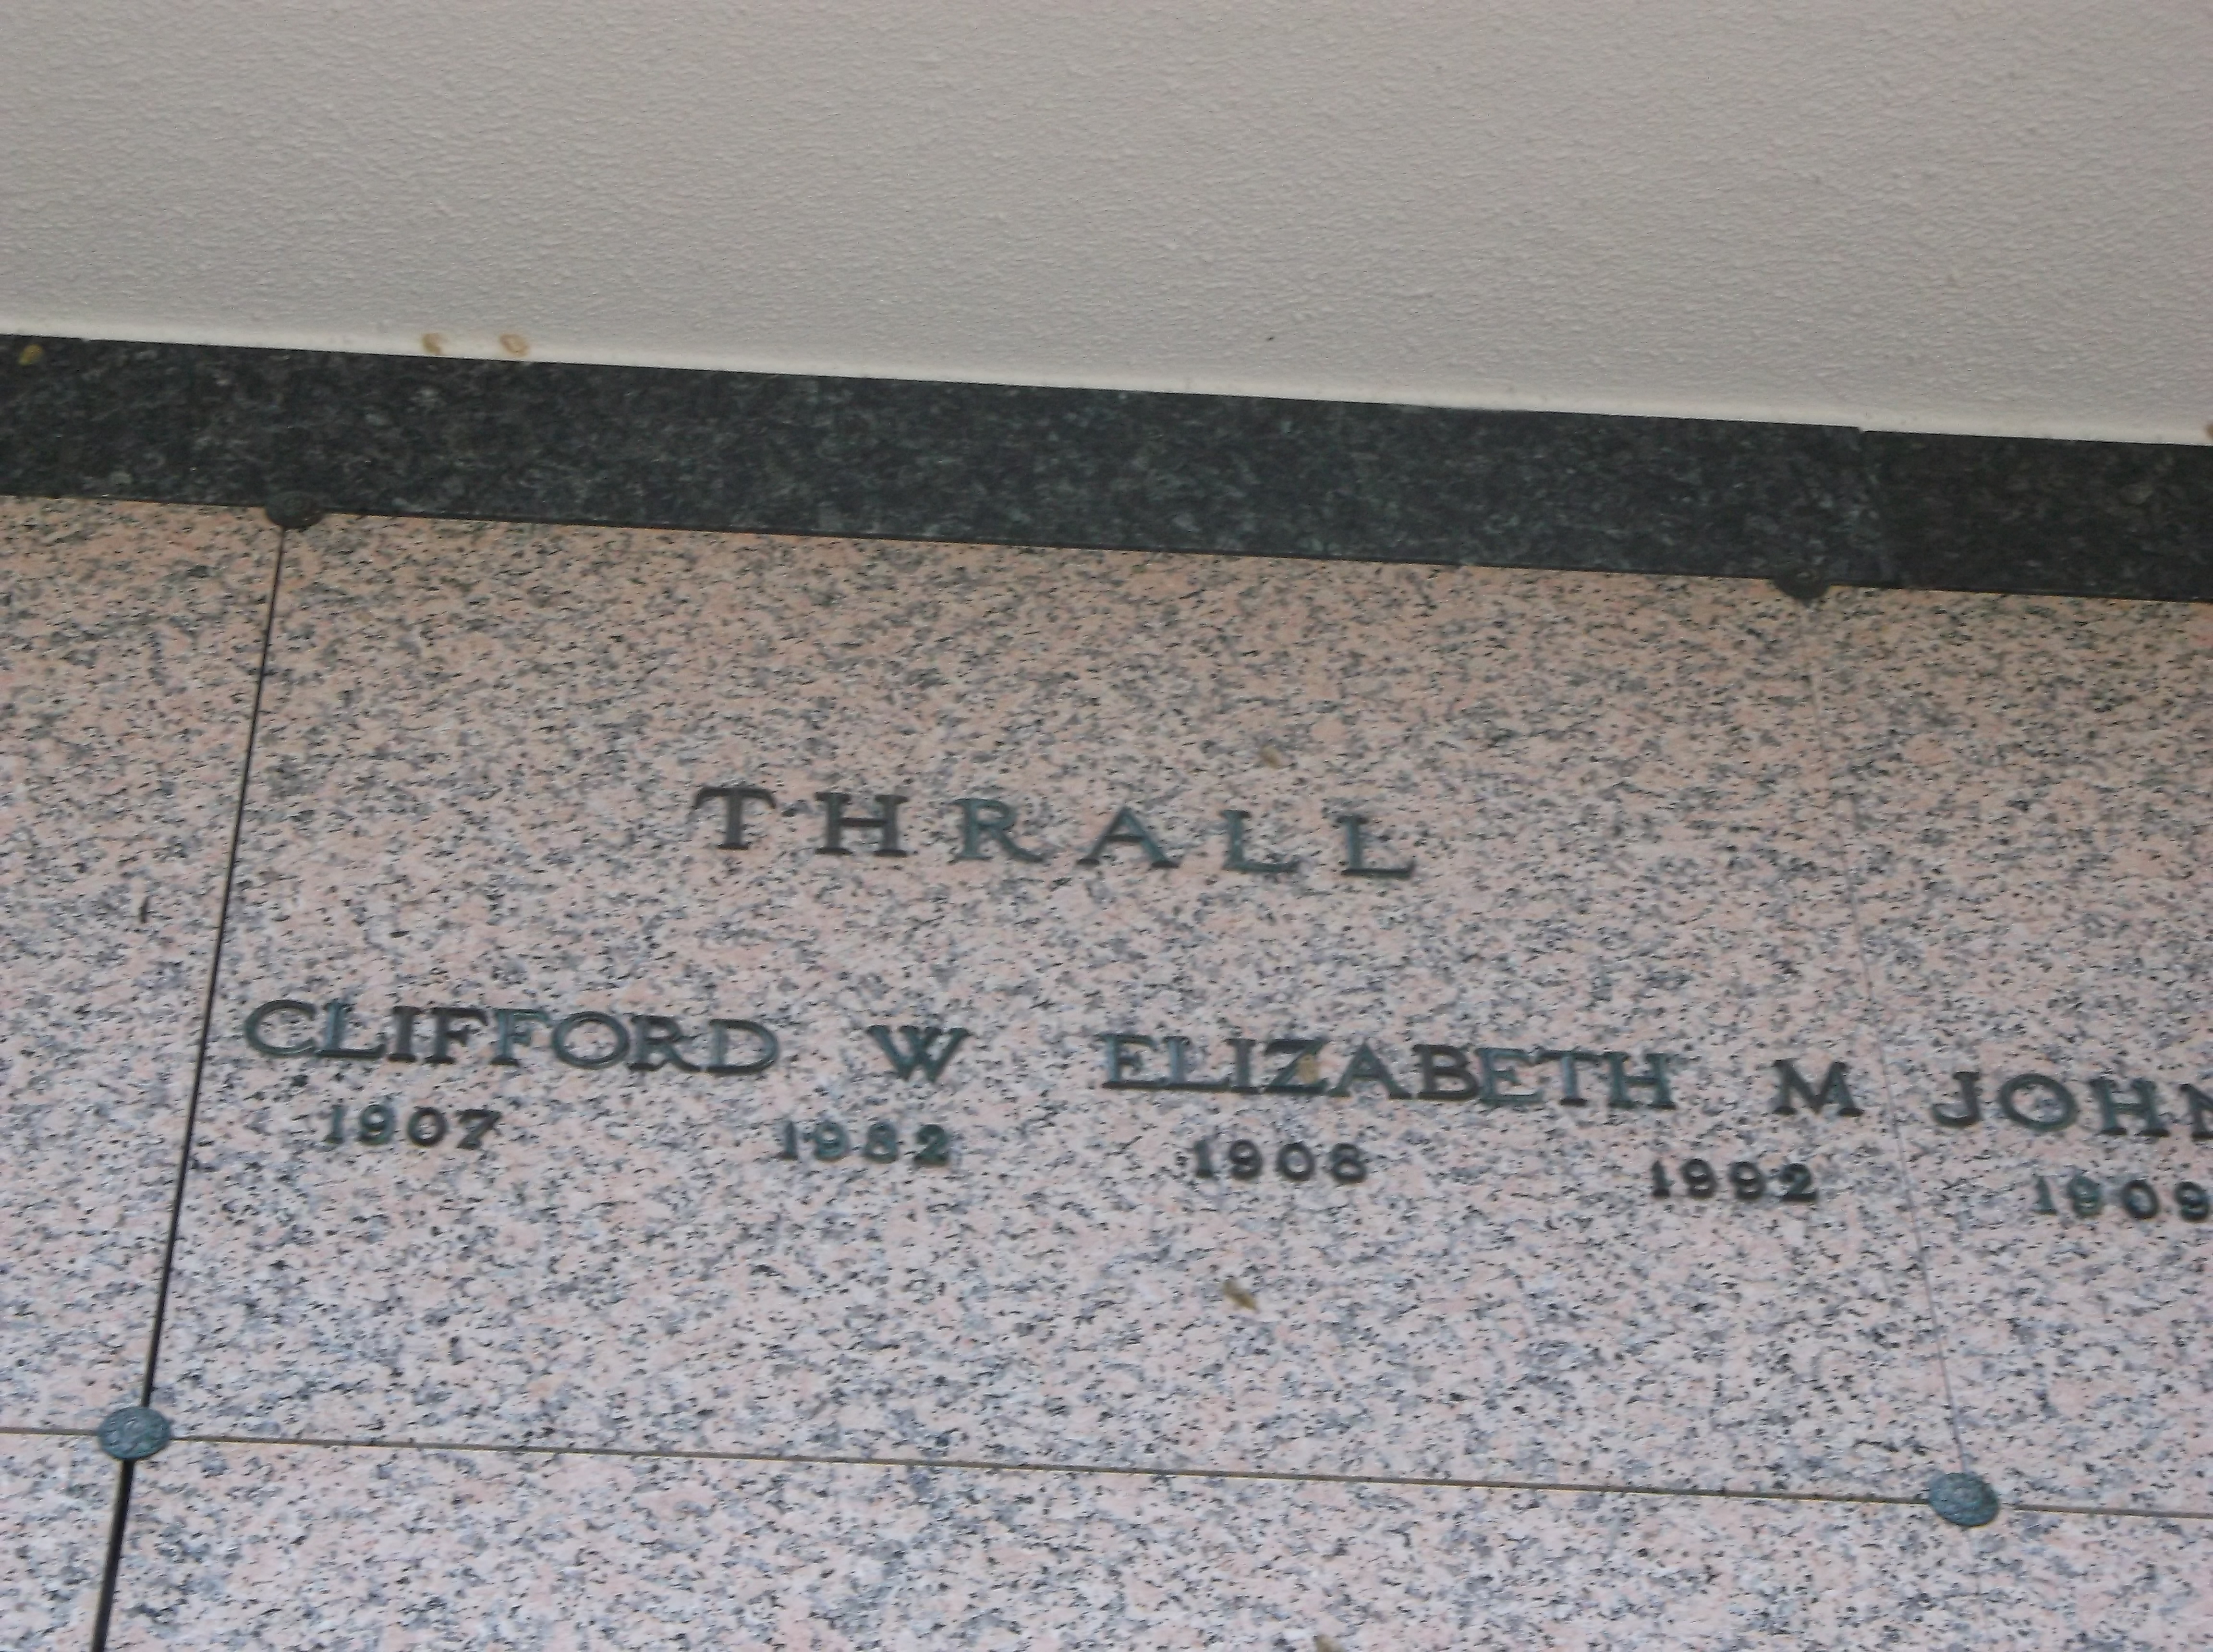 Elizabeth M Thrall